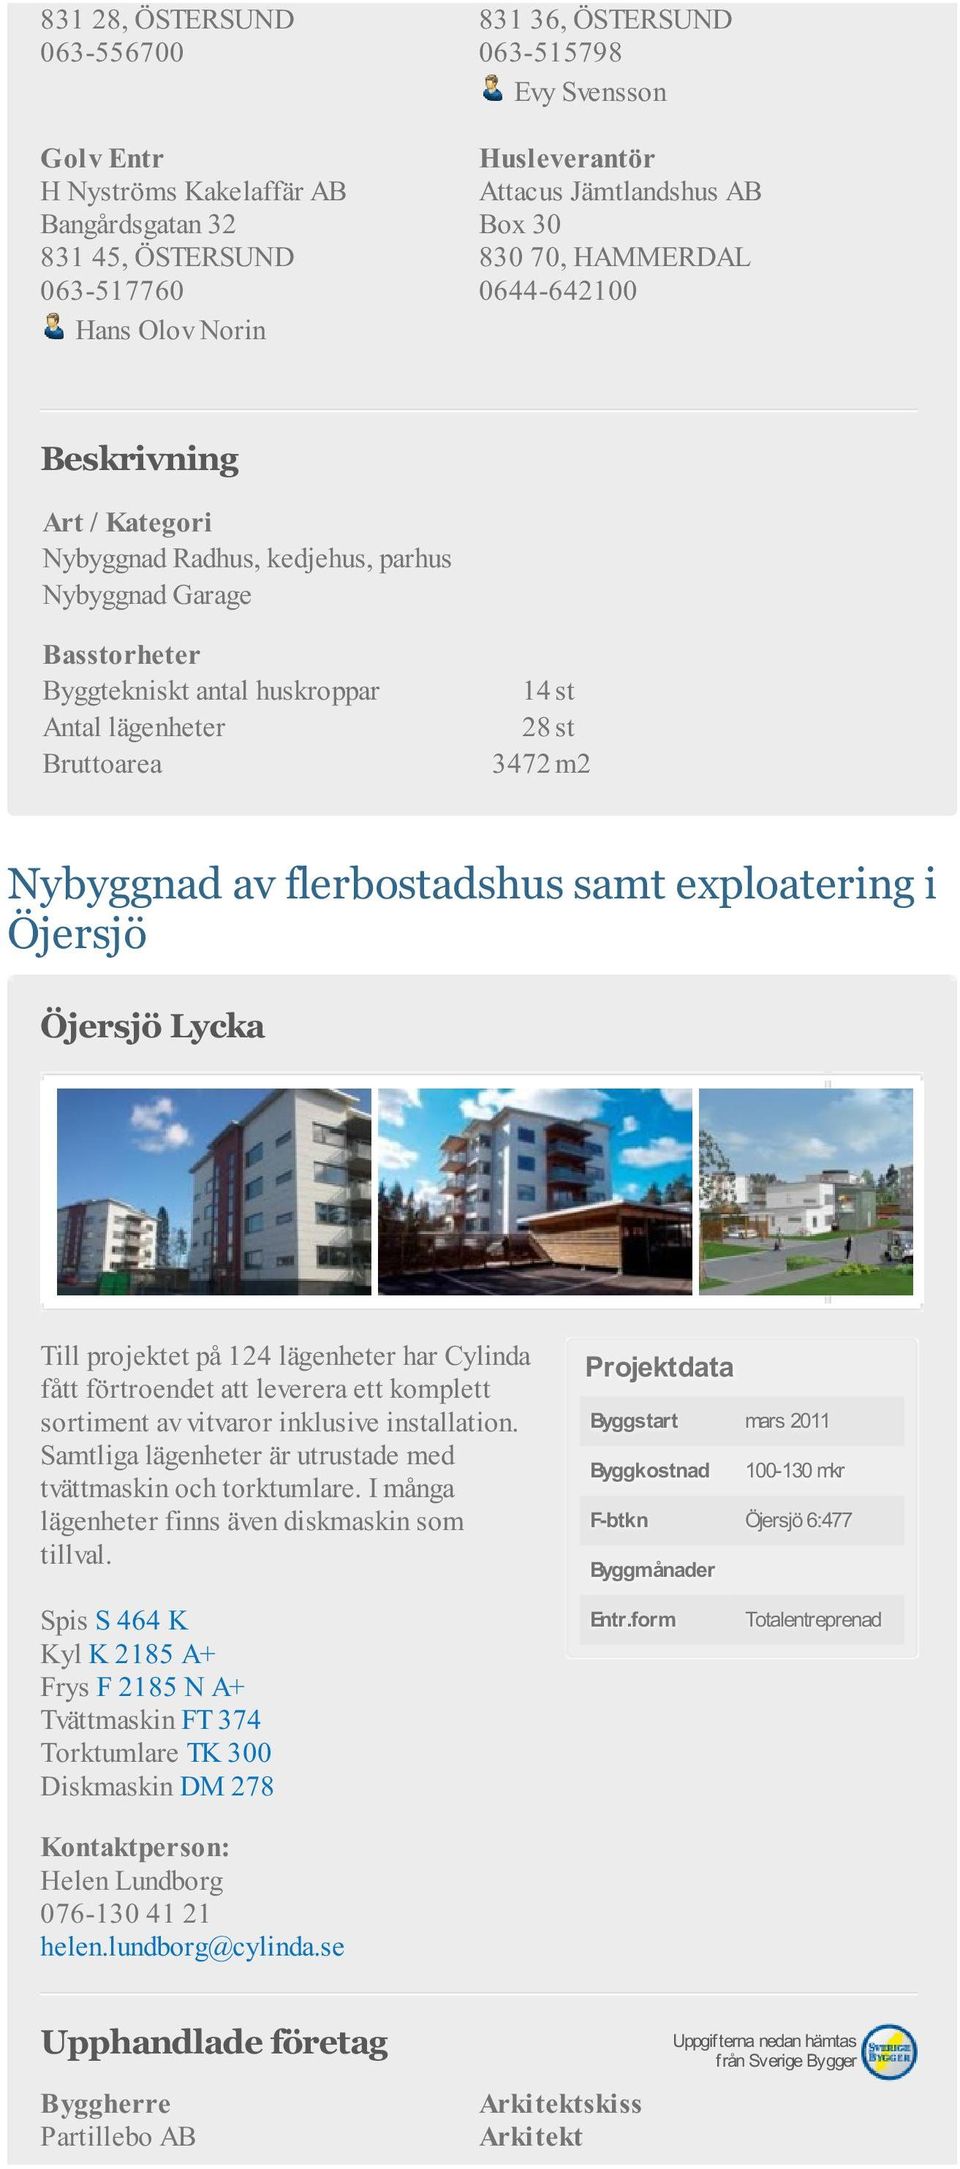 3472 m2 Nybyggnad av flerbostadshus samt exploatering i Öjersjö Öjersjö Lycka Till projektet på 124 lägenheter har Cylinda fått förtroendet att leverera ett komplett sortiment av vitvaror inklusive